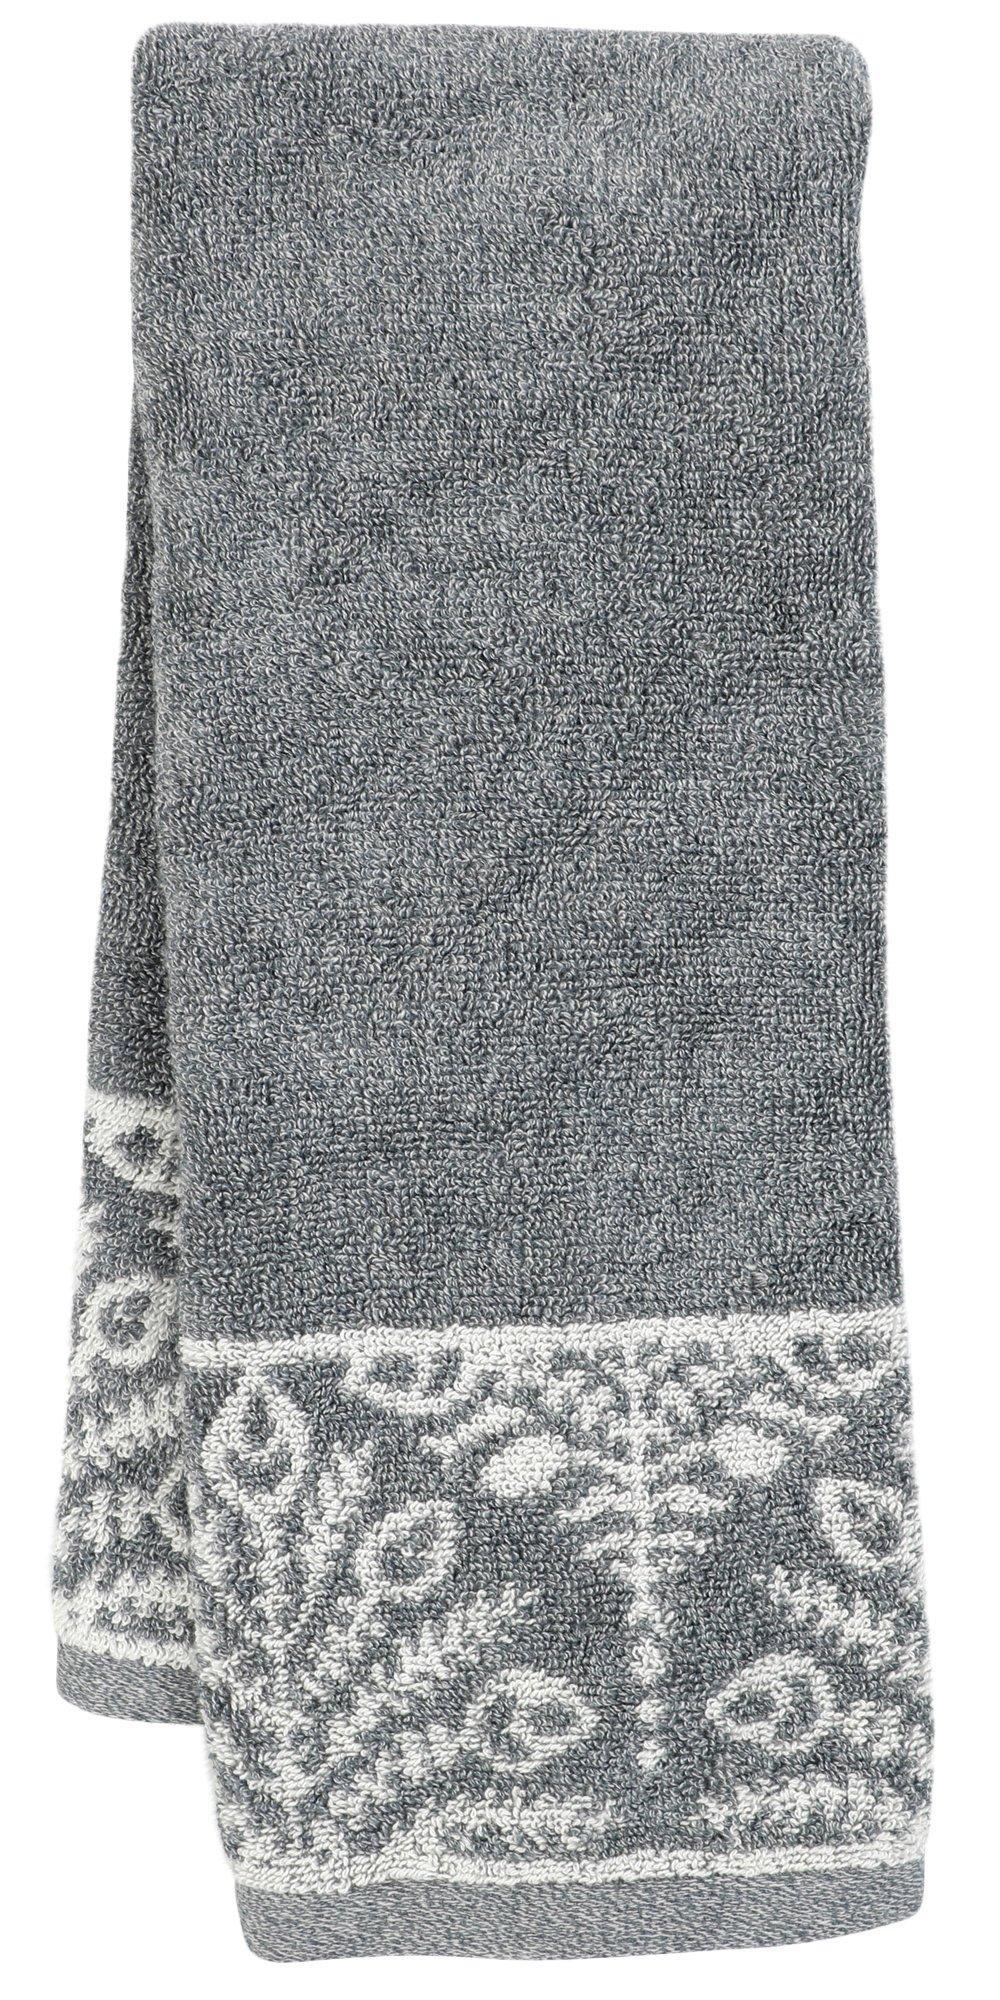 16x30 Floral Cotton Hand Towel